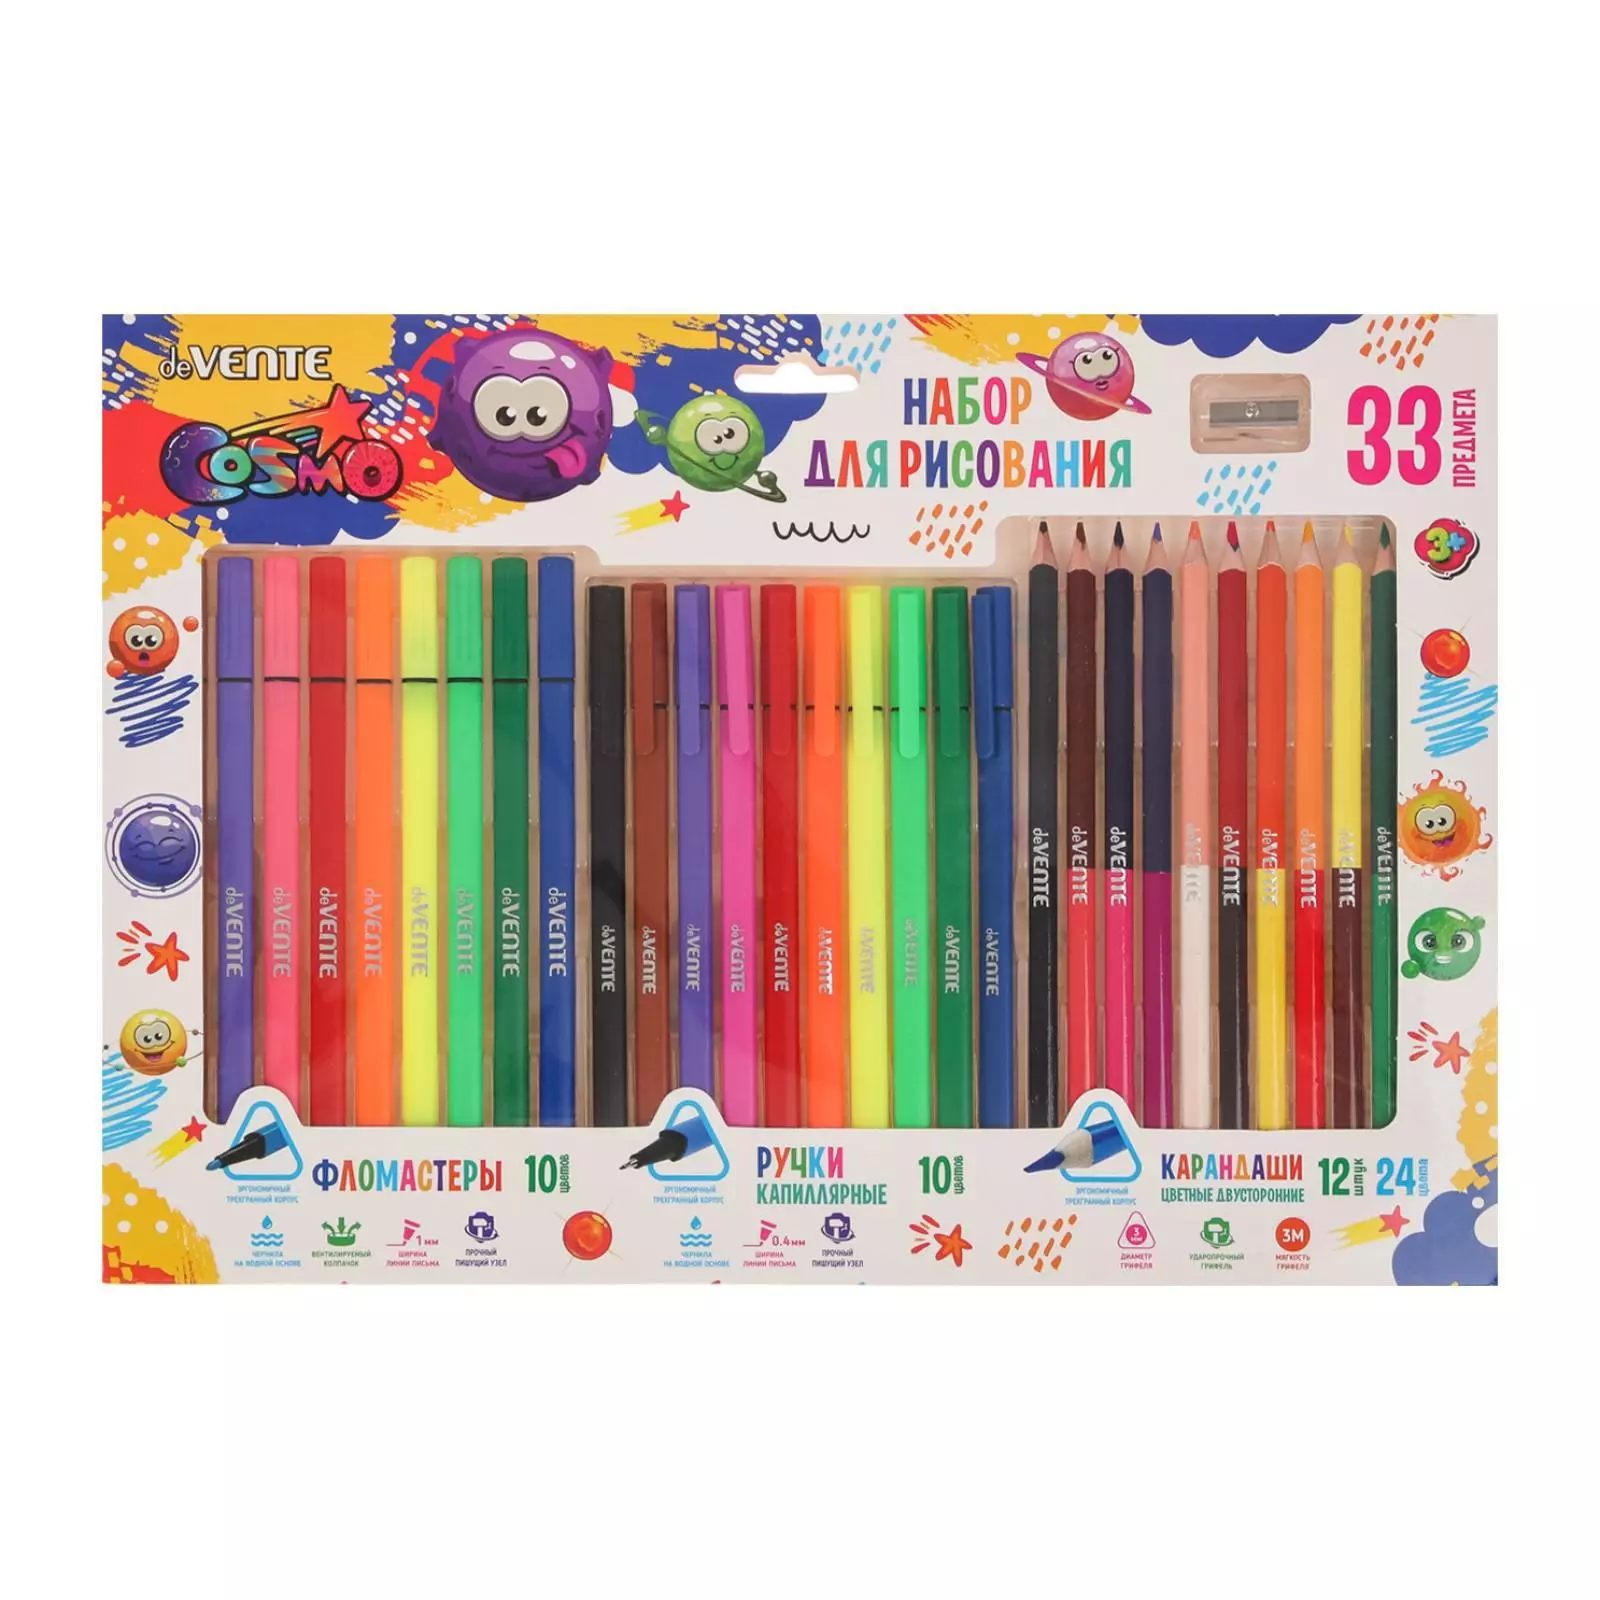 Набор для рисования deVENTE (фломастеры, ручки капиллярные, карандаши цветные, точилка), 8079201